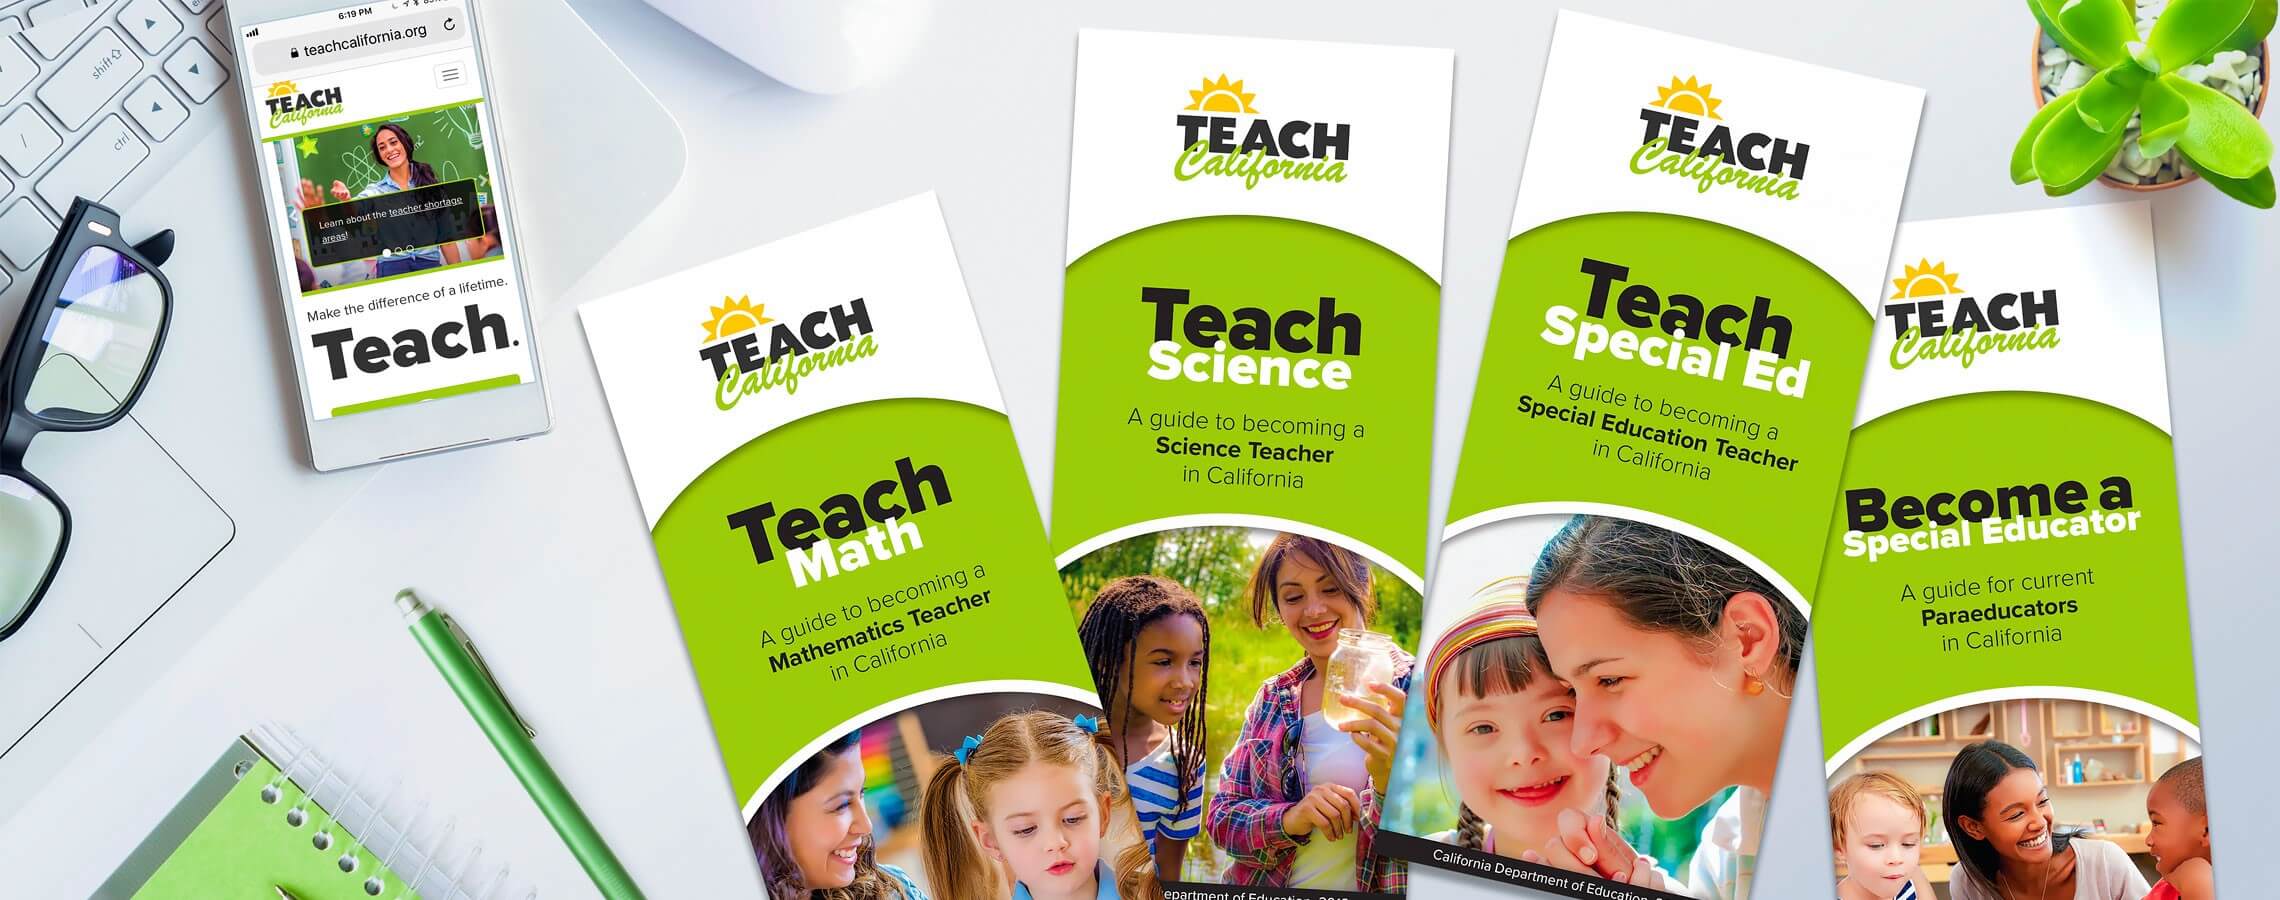 Photo of TEACH California brochures.